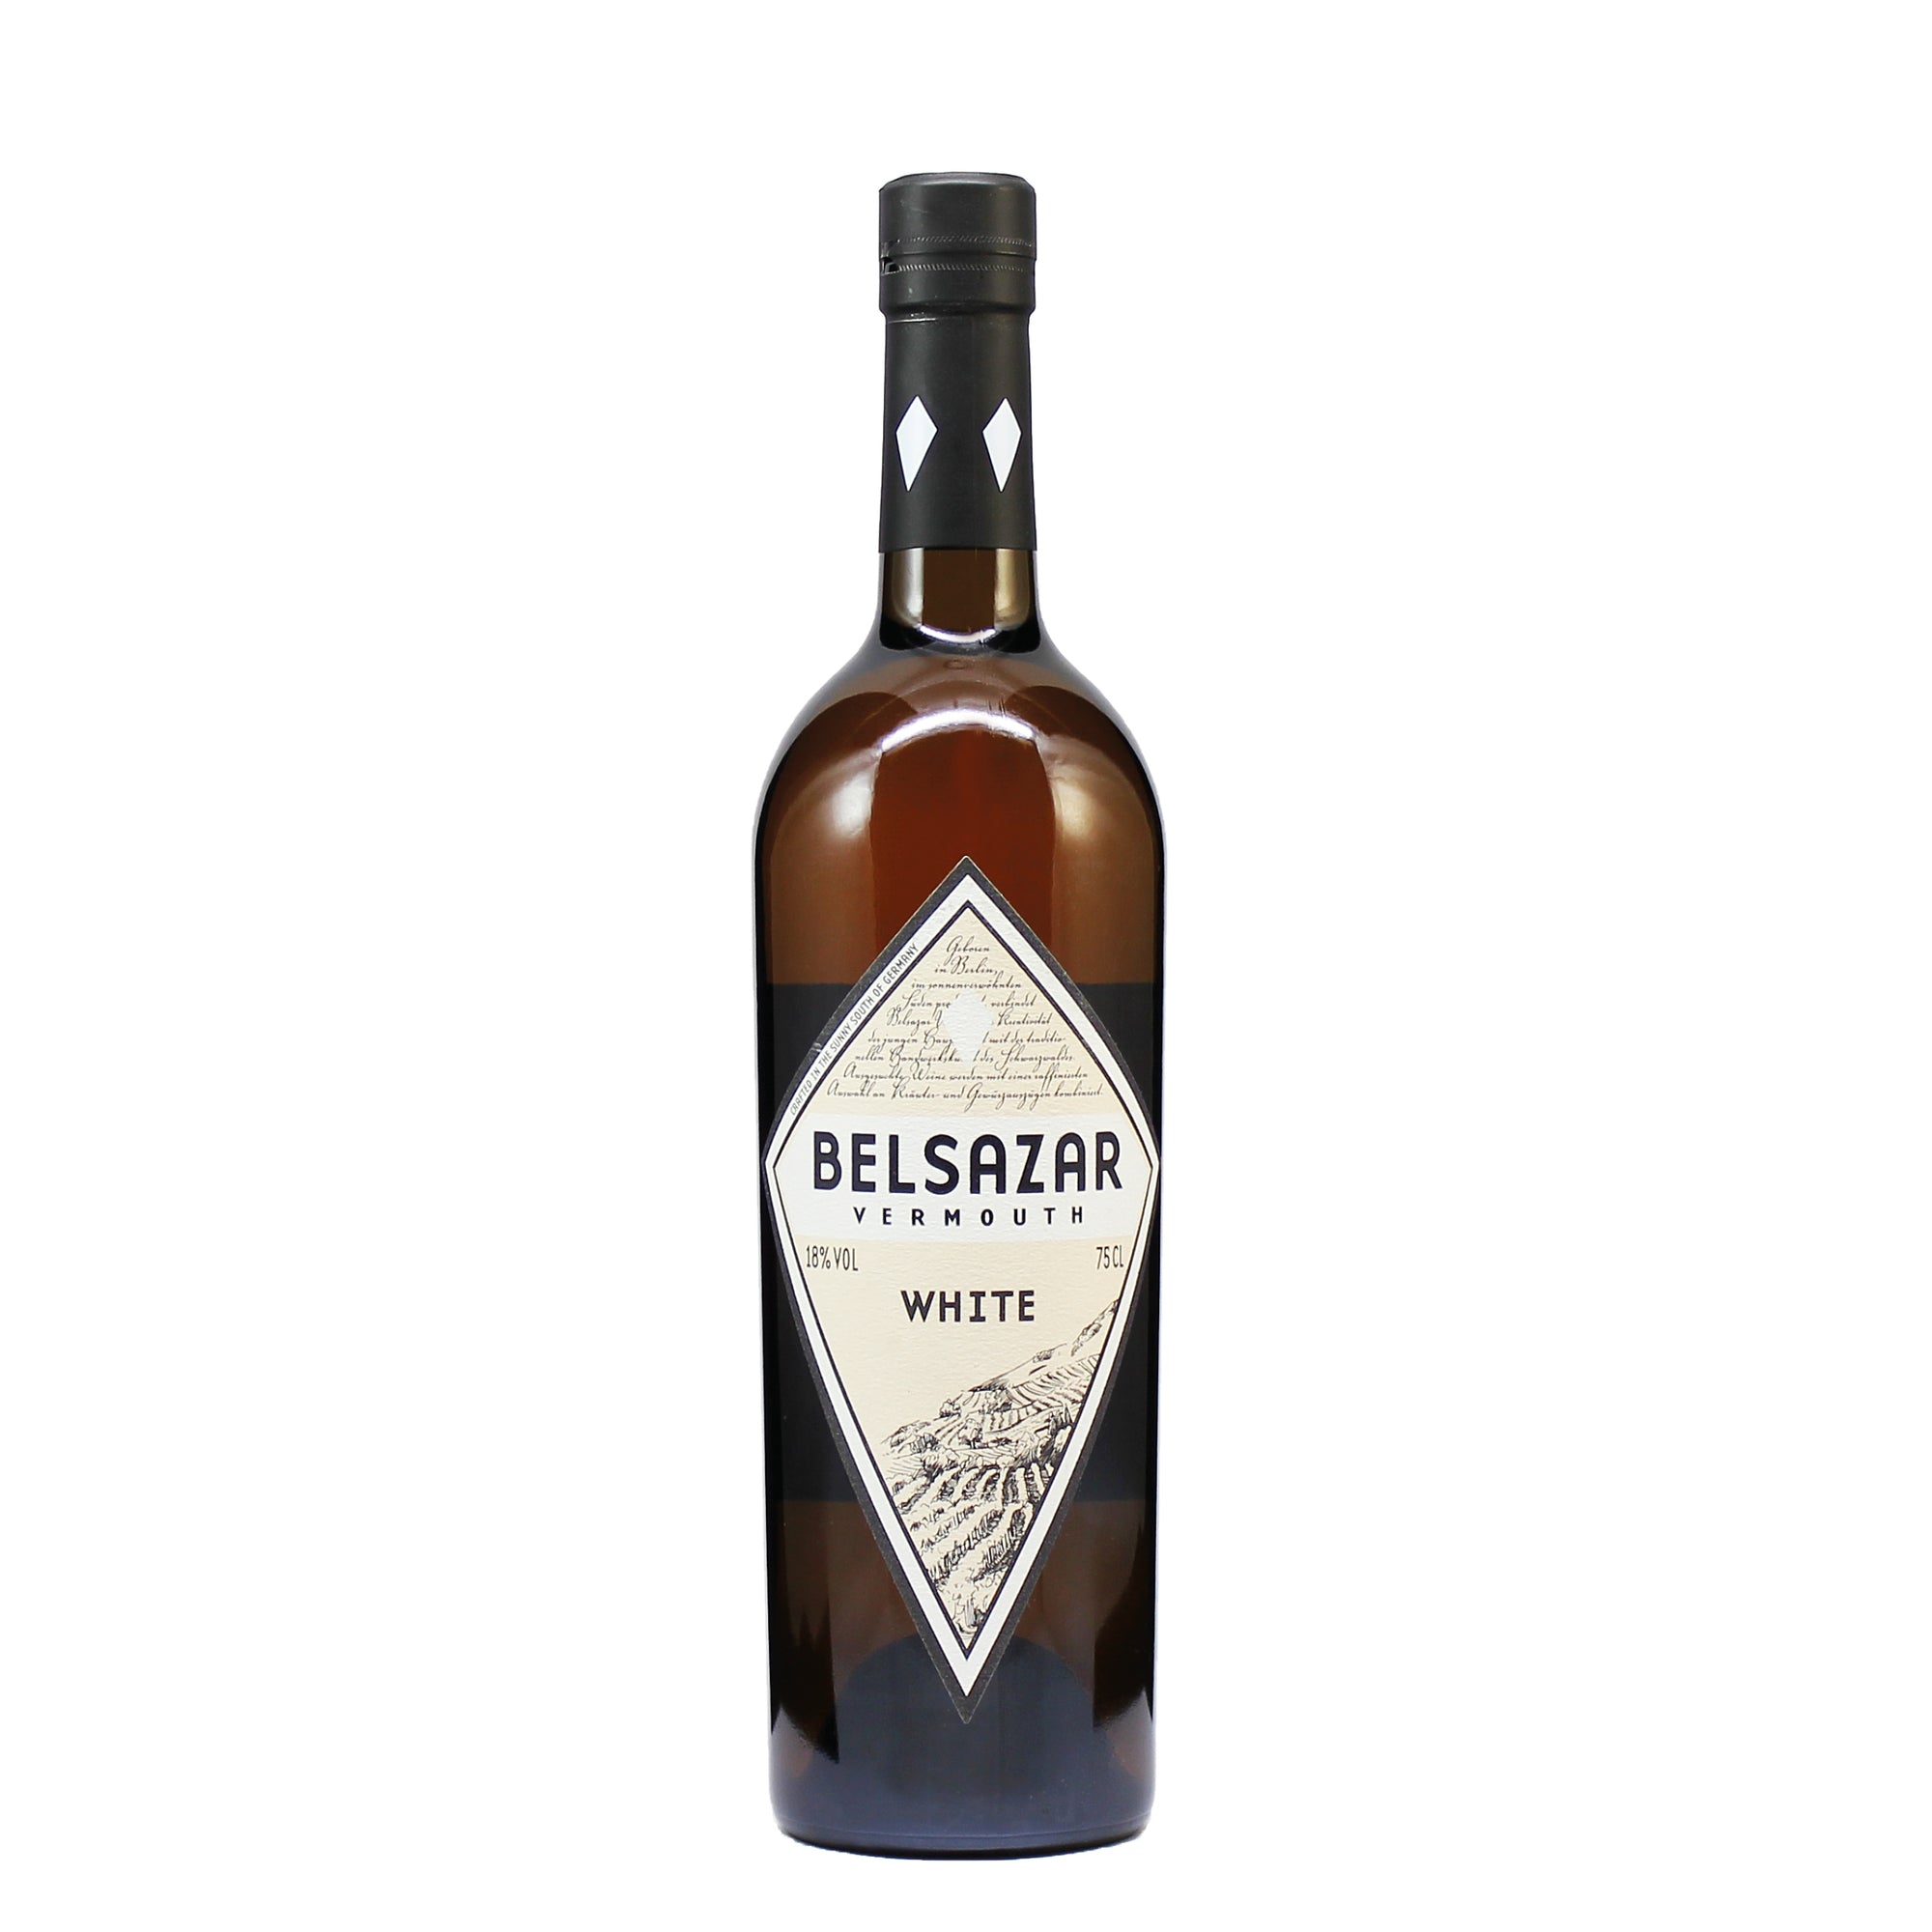 White Vermouth Belsazar